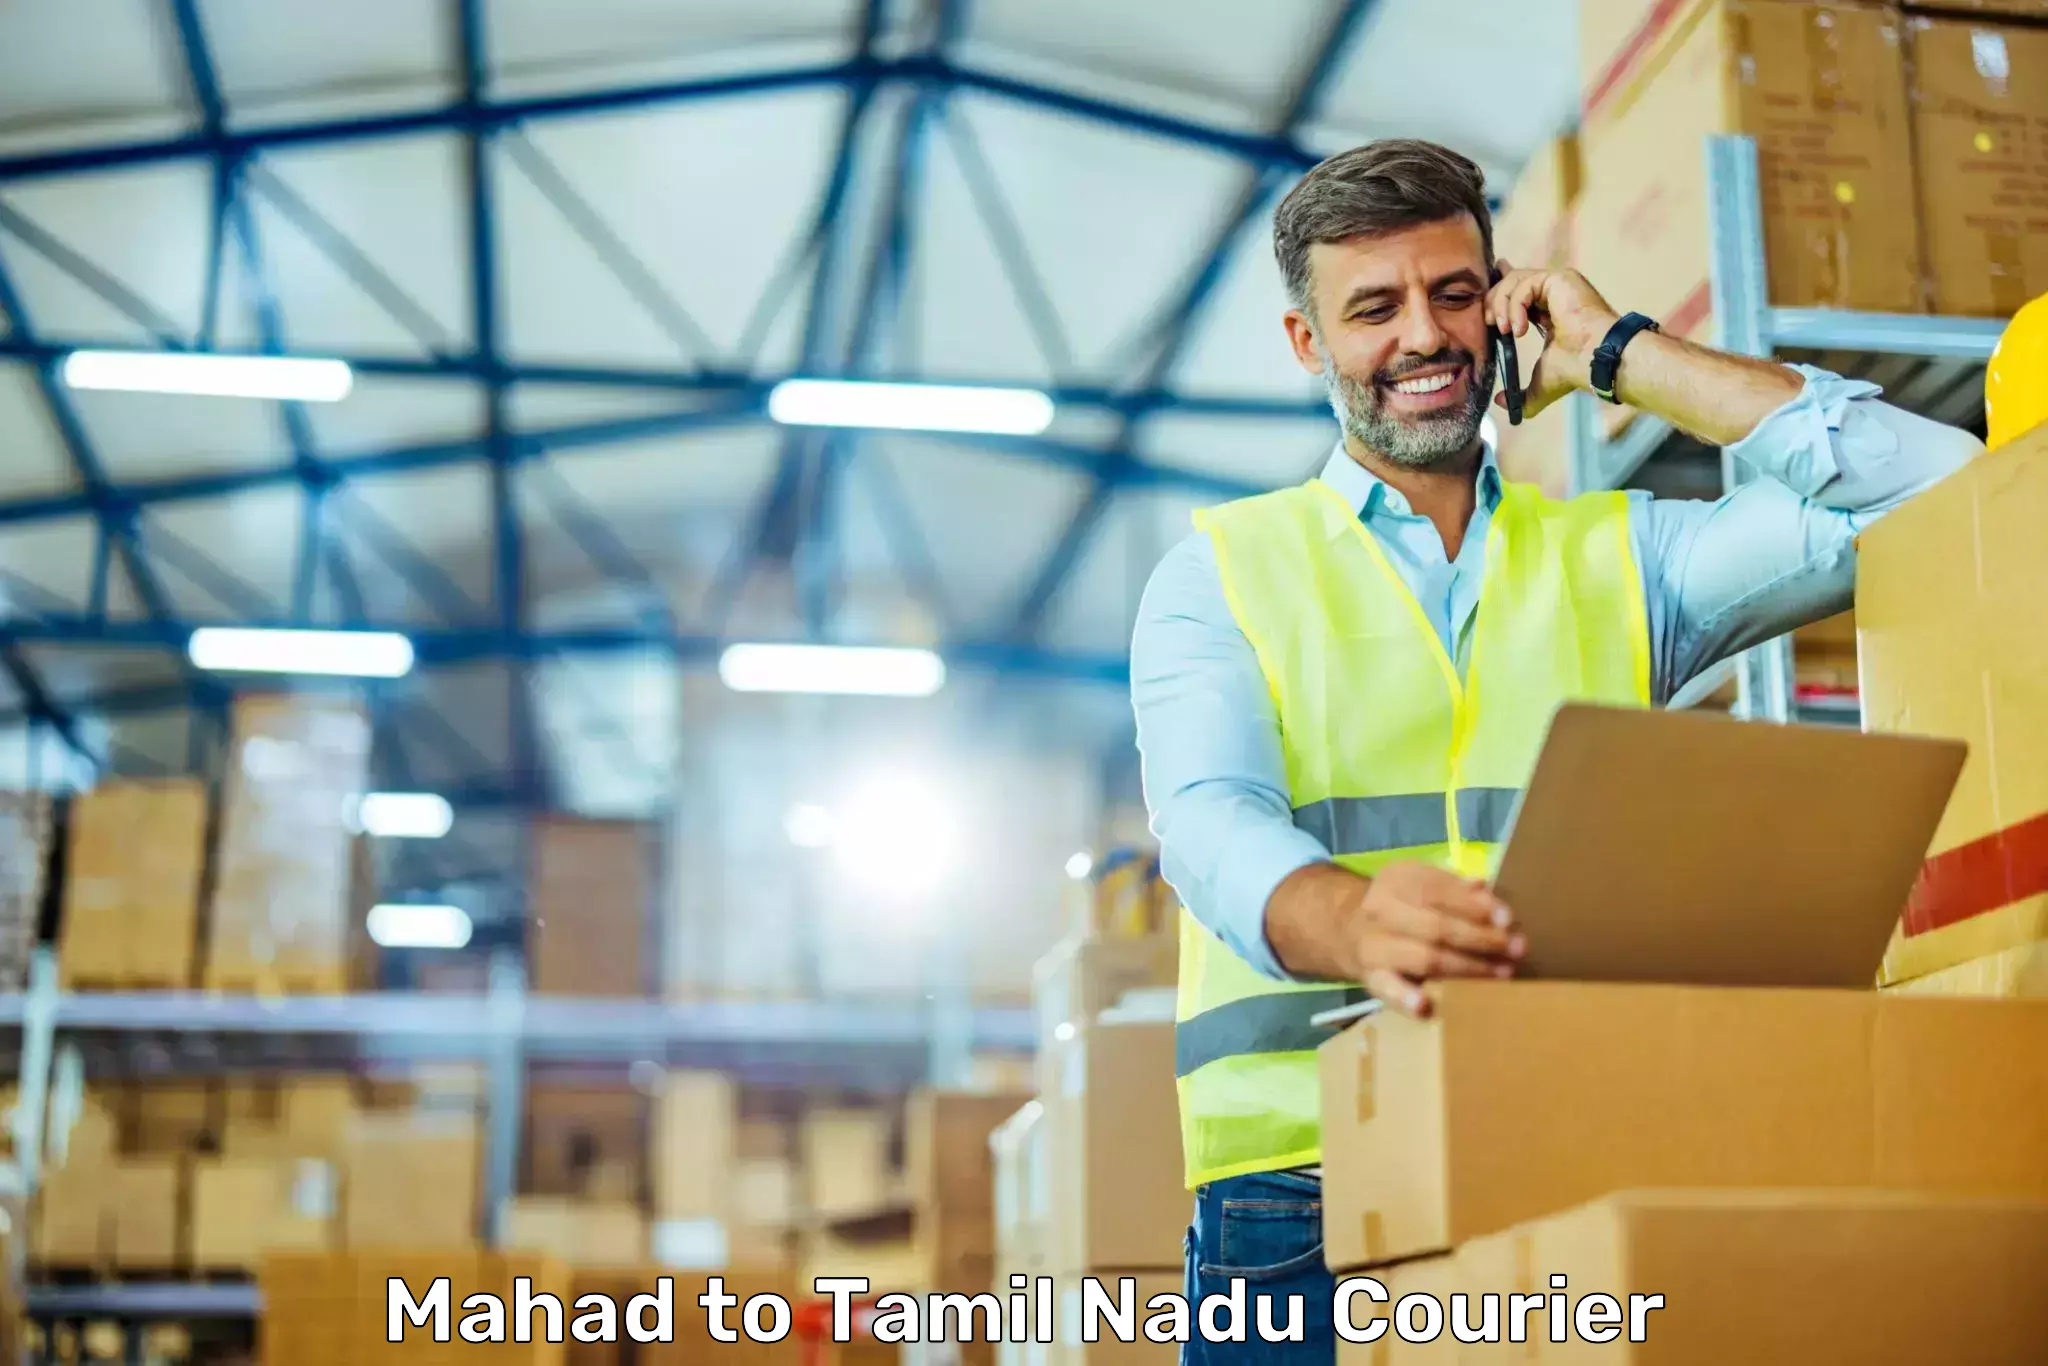 Premium courier solutions Mahad to Kodumudi